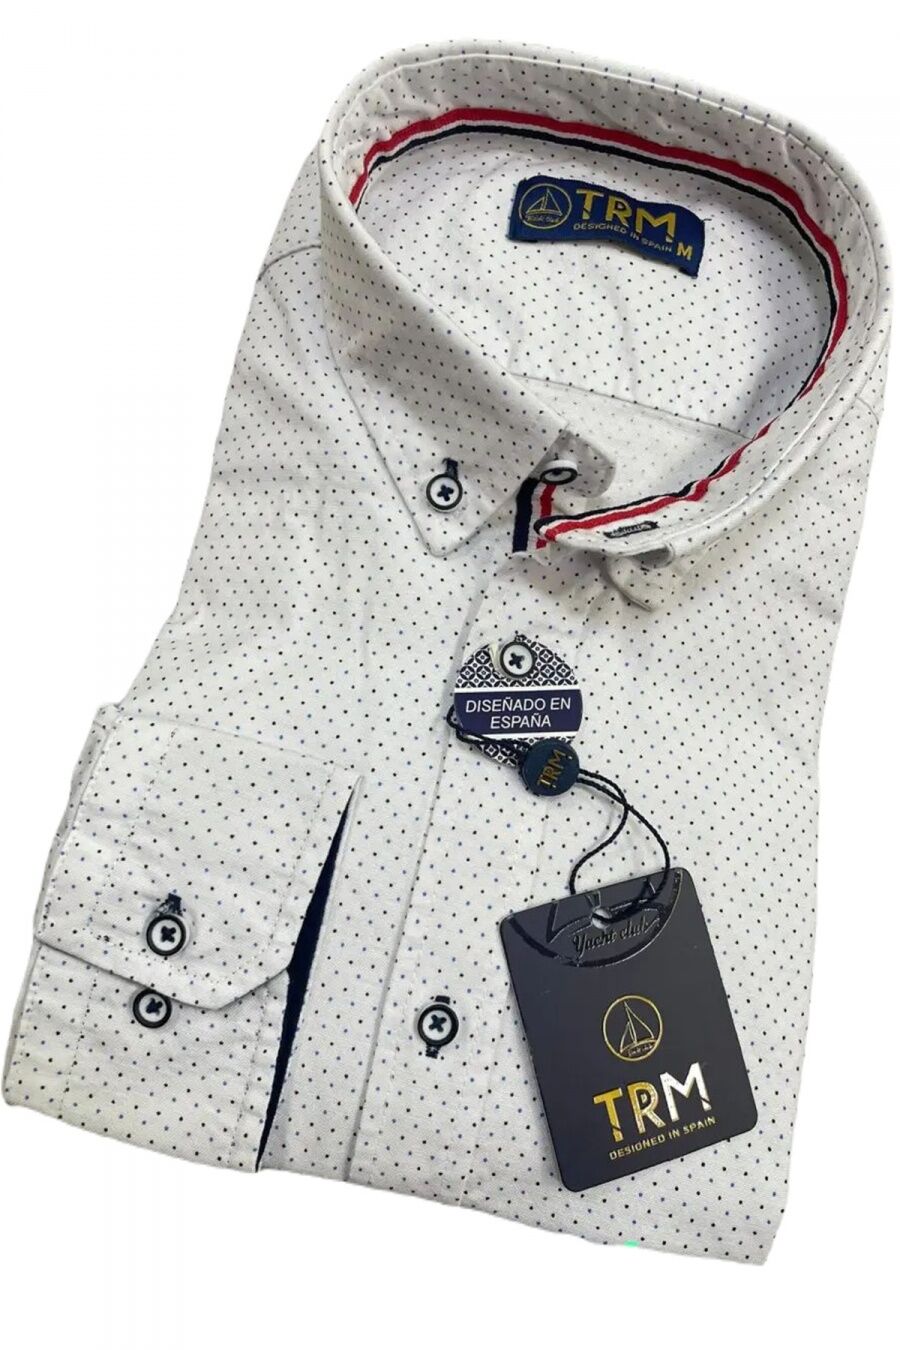 Chemises Homme Blanc MAX8 TRM001 #c Efashion Paris